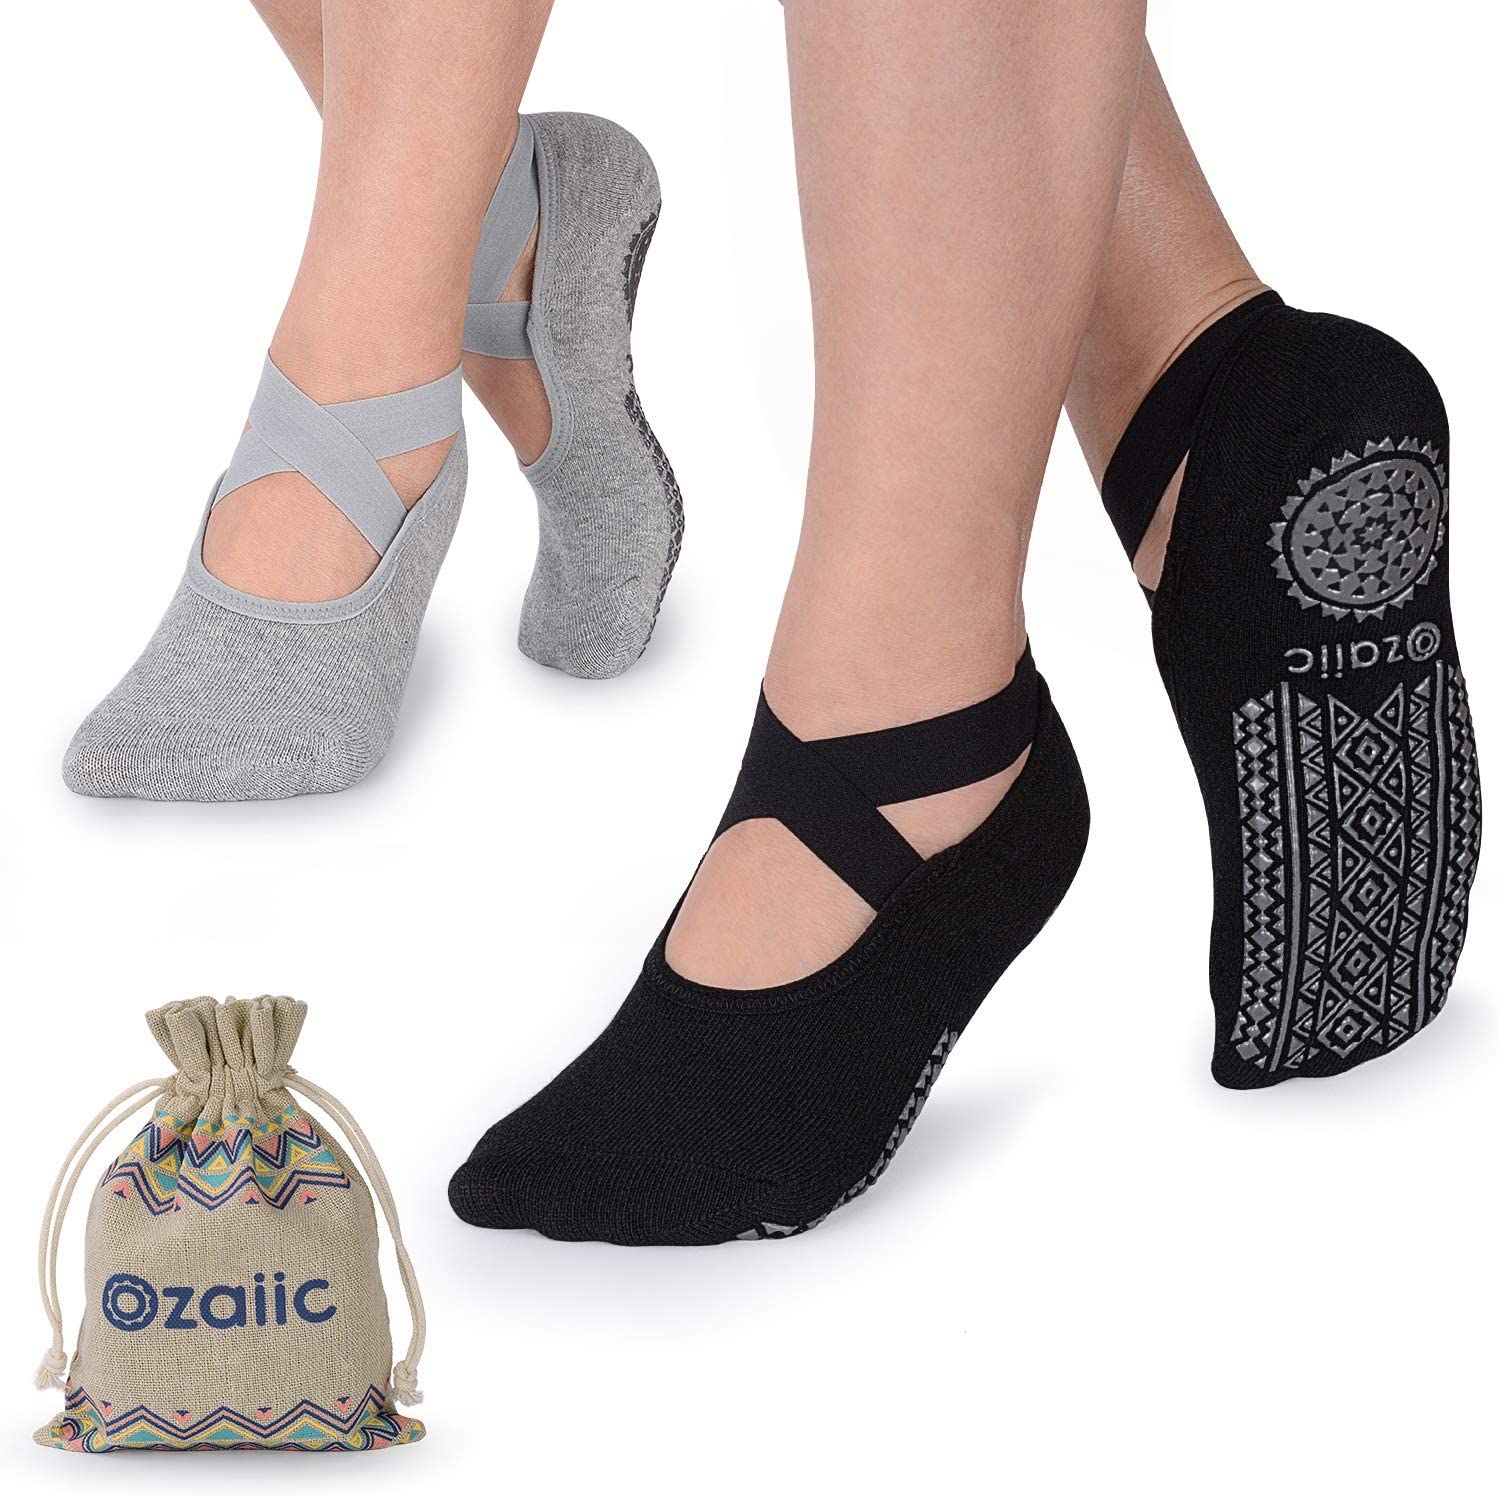 Ozaiic Yoga Socks for Women